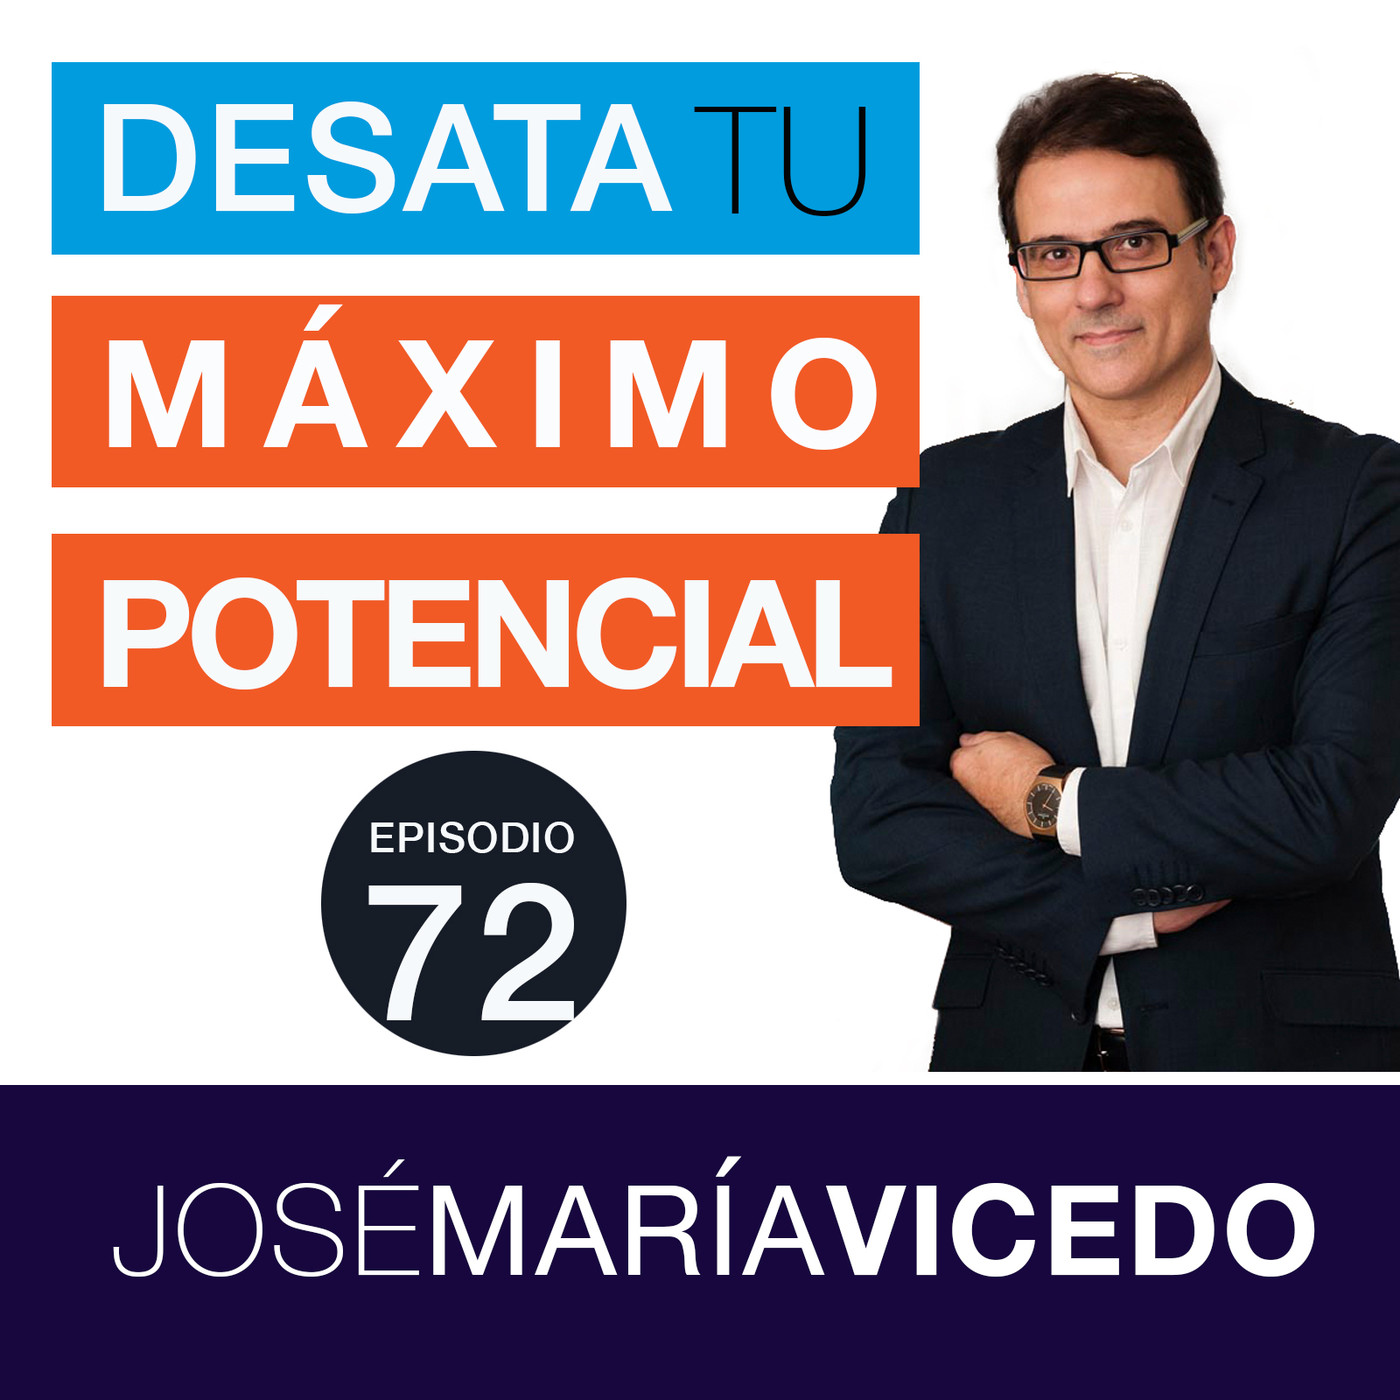 Las grandes claves para multiplicar la perseverancia / José María Vicedo | Ep.72